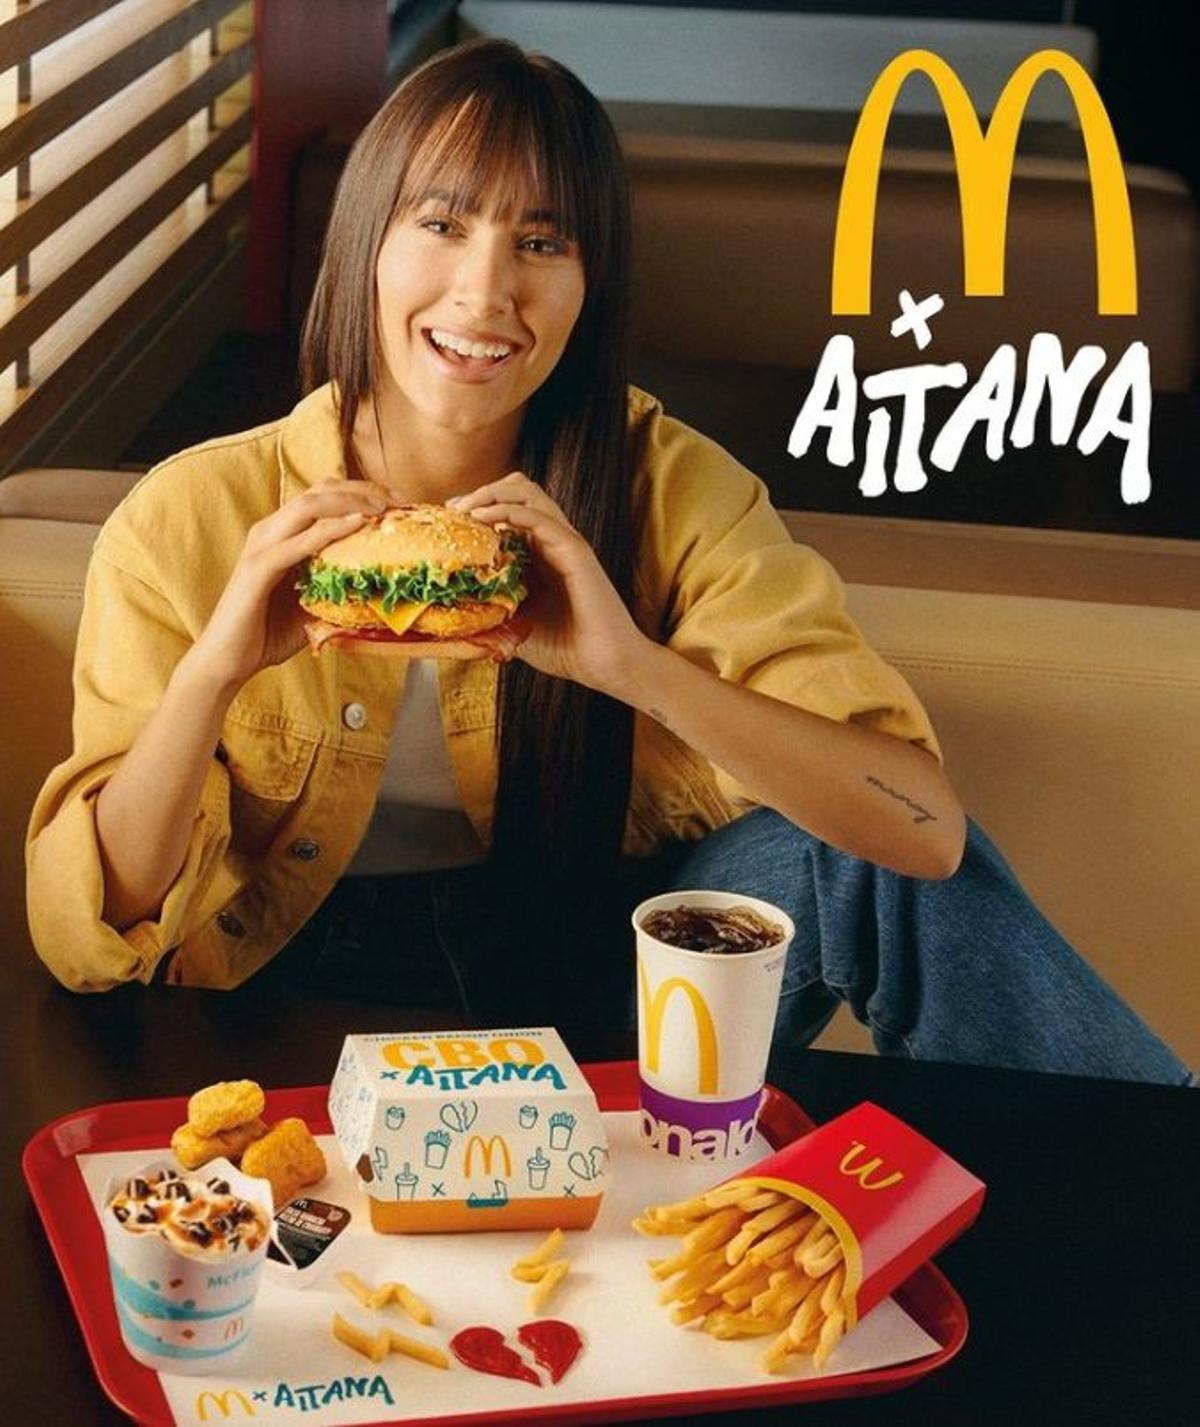 La hamburguesa de McDonald's y Aitana que ha dado mucho de que hablar